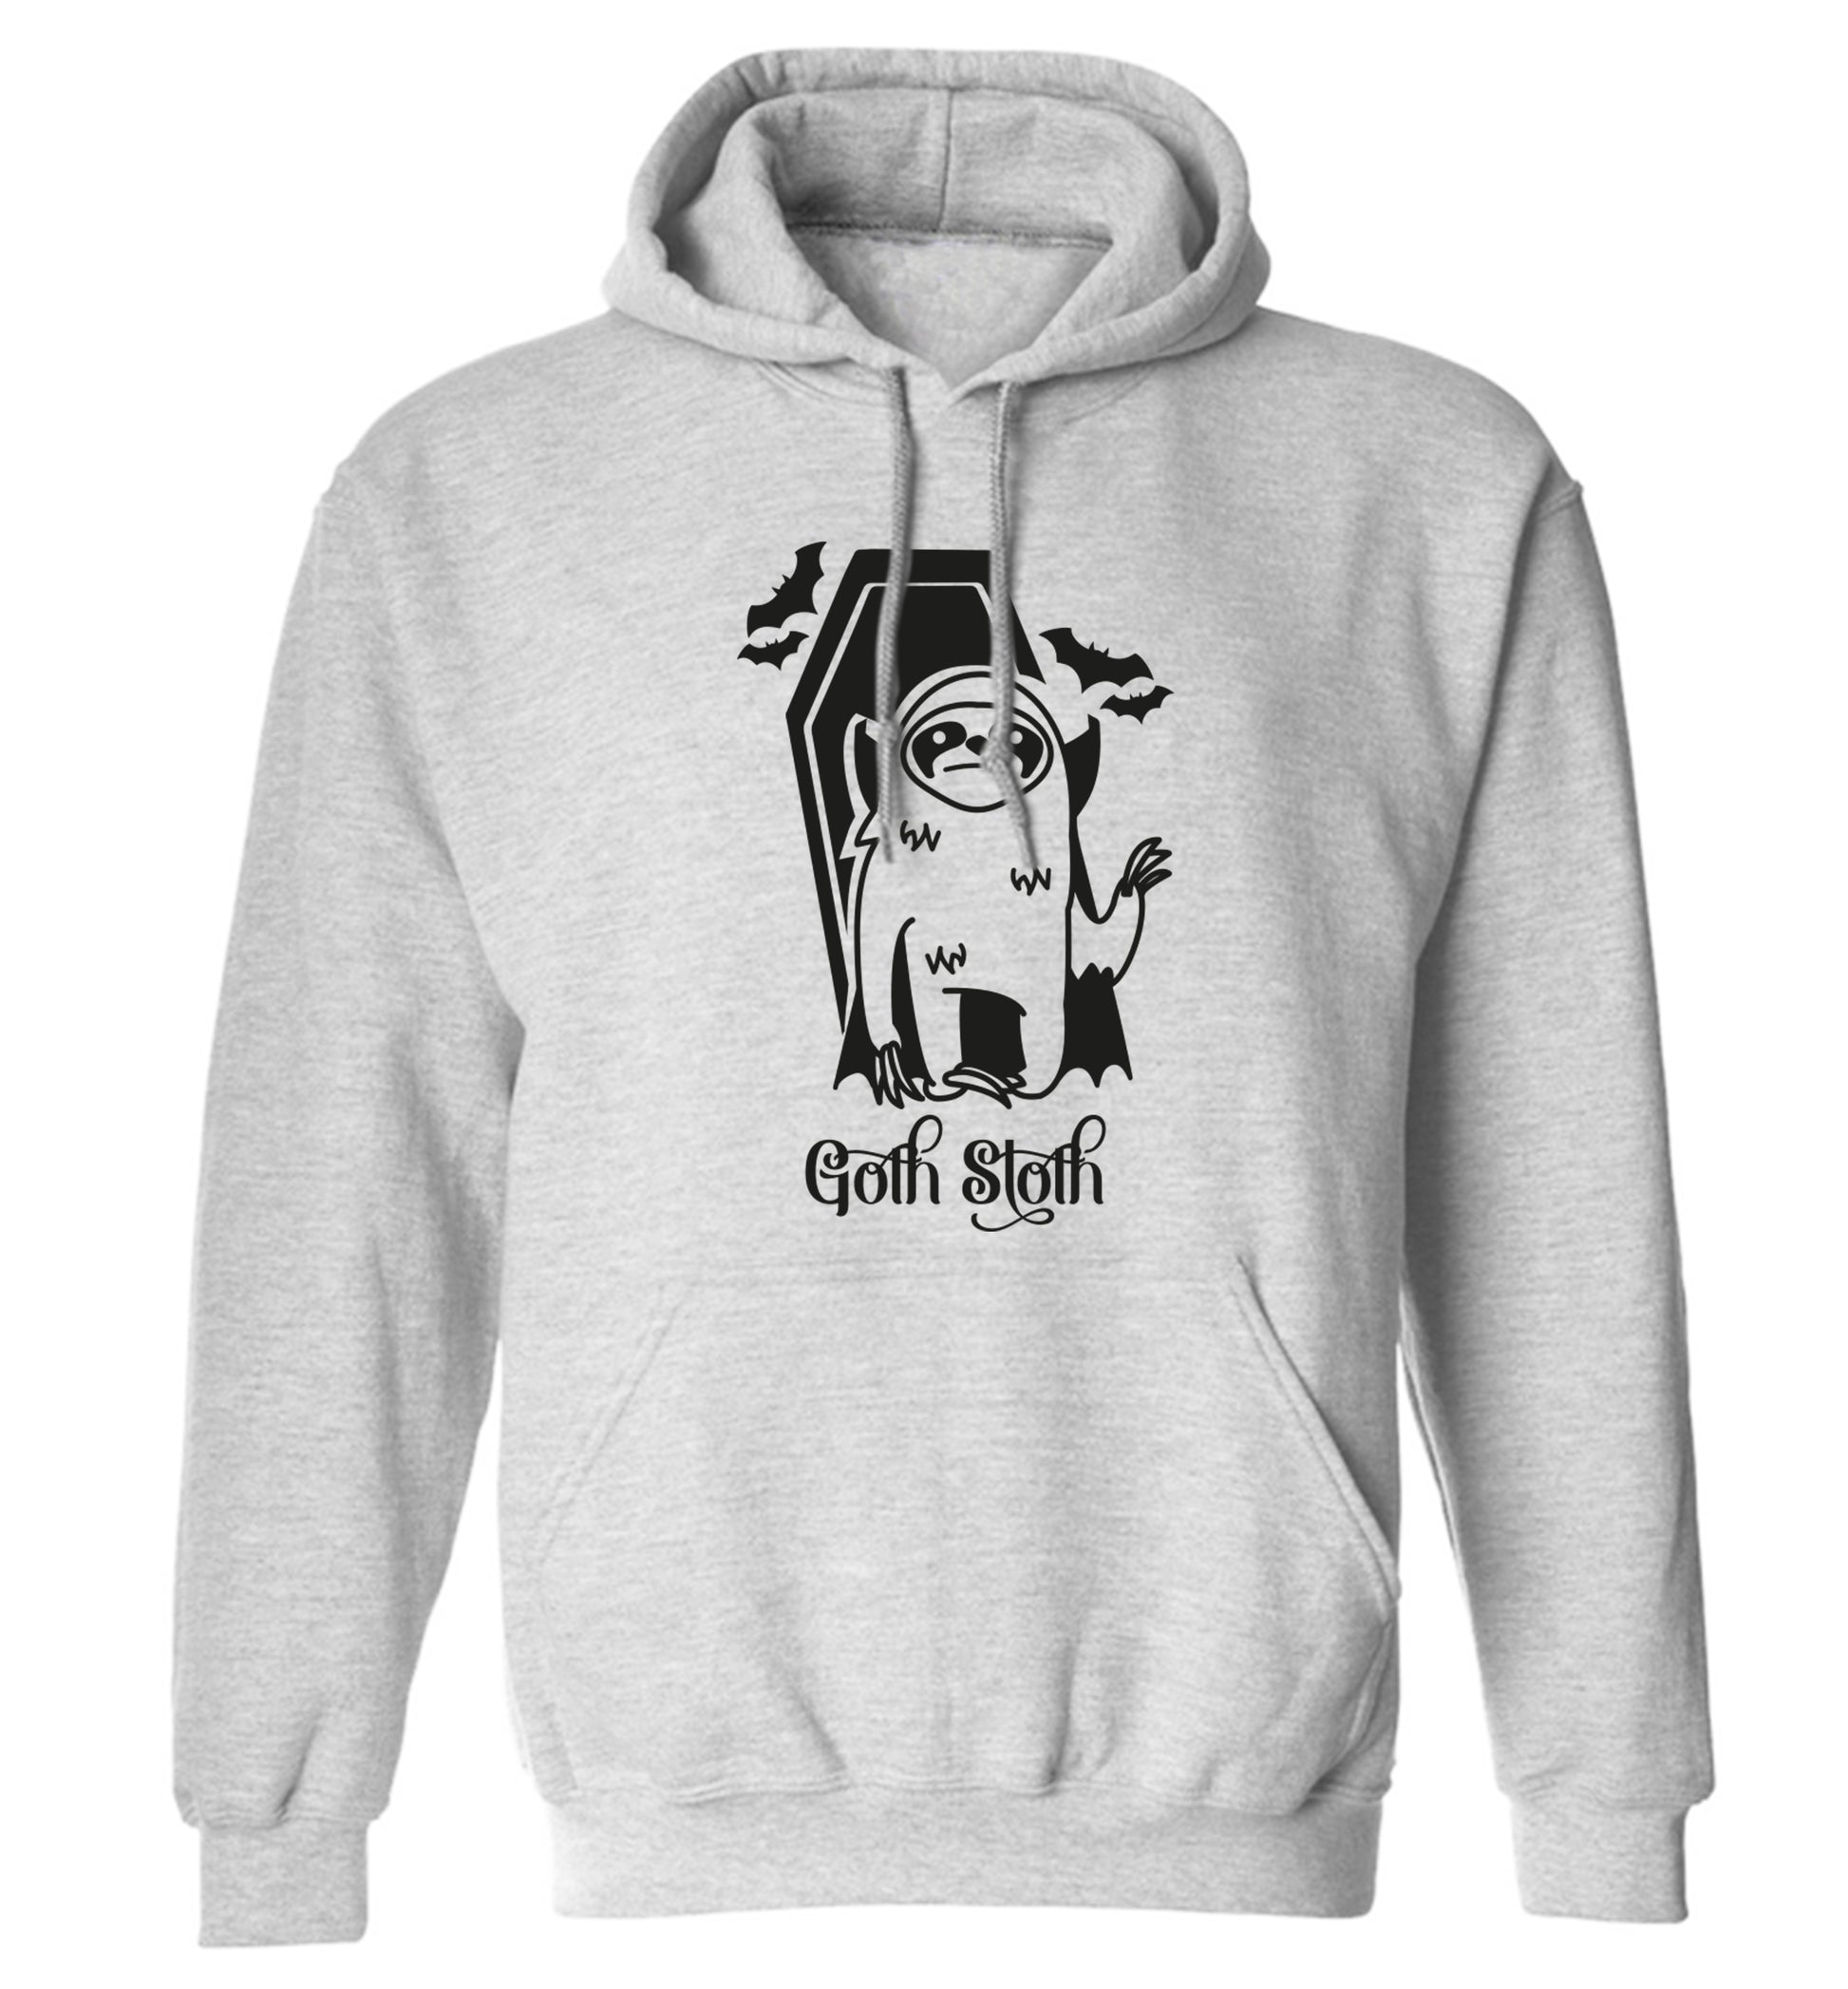 Goth Sloth adults unisex grey hoodie 2XL